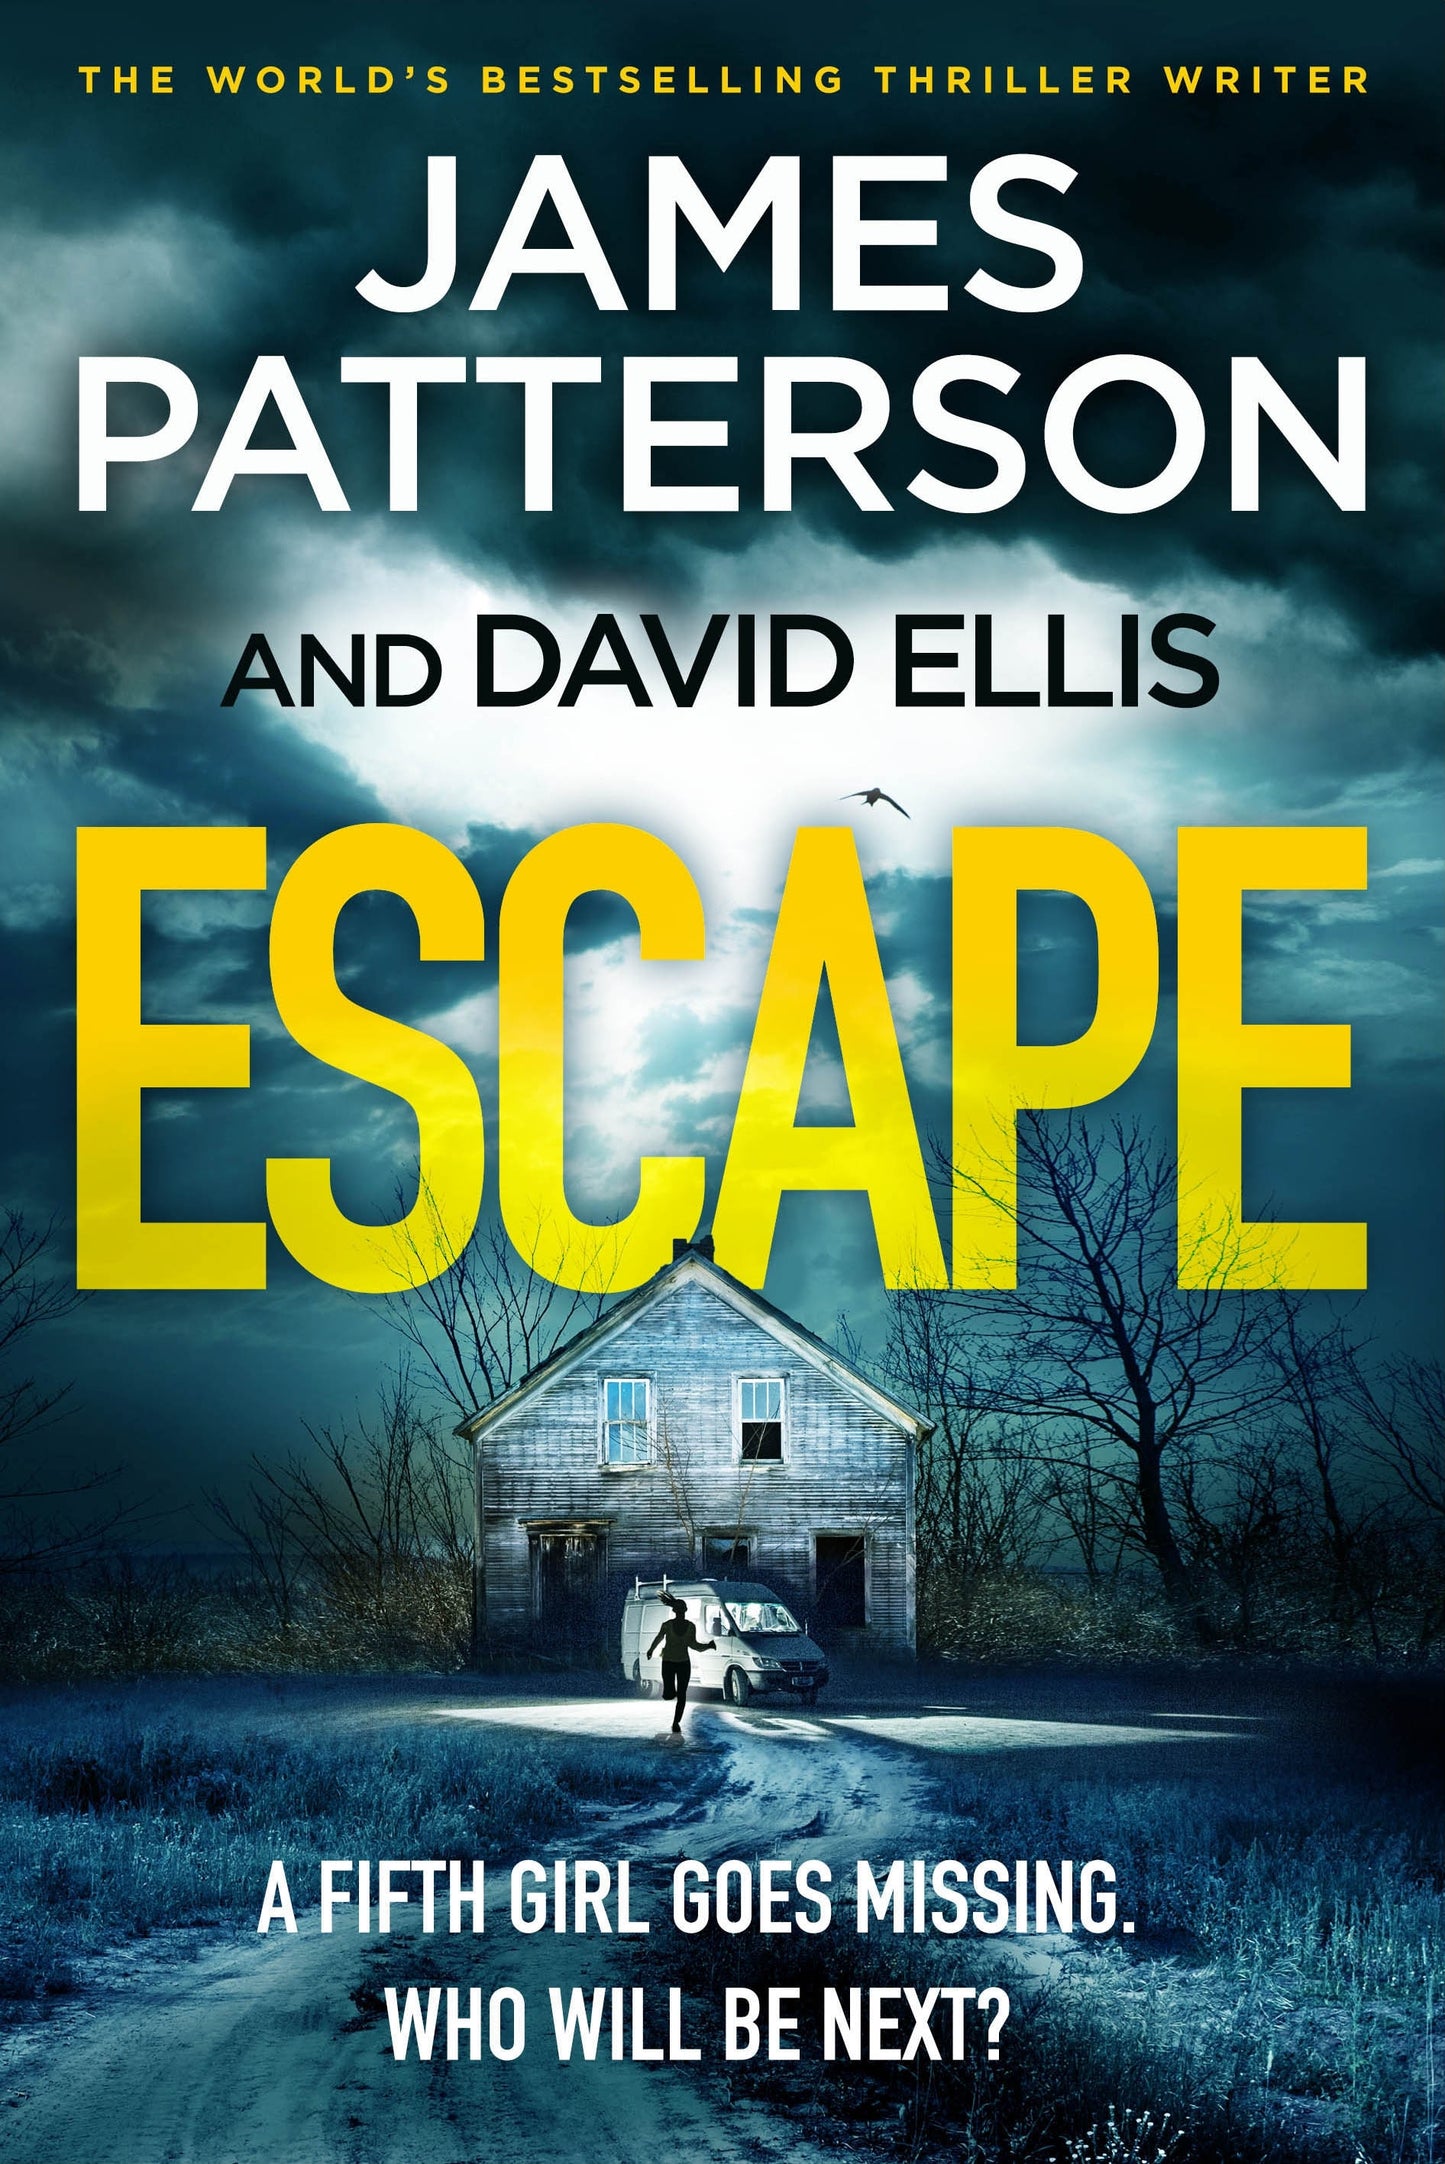 Escape James Patterson